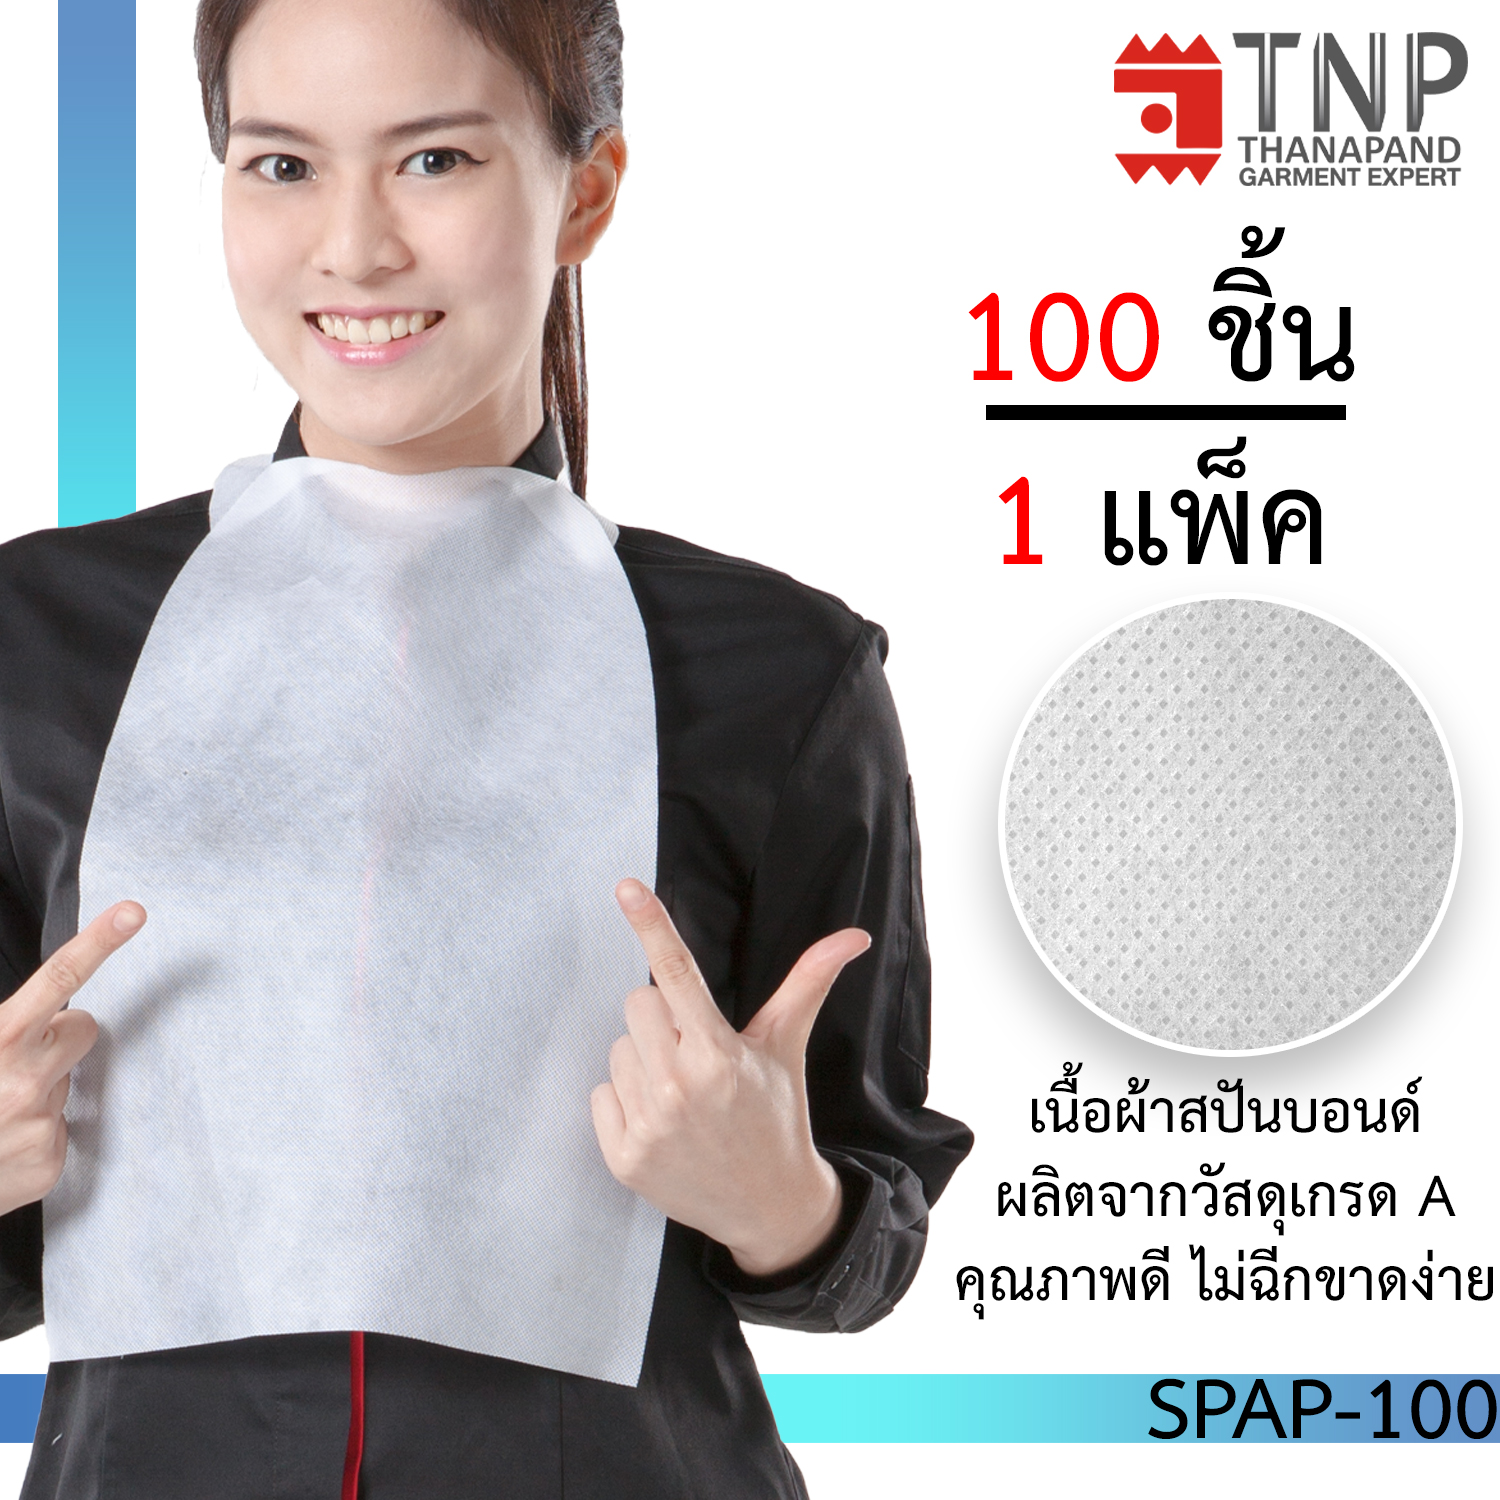 ผ้ากันเปื้อน  ผ้ากันเปื้อนใช้แล้วทิ้ง ผ้ากันเปื้อนกระดาษ 100 ชิ้น / แพ็ค รหัส #SPAP-100 ผ้ากันเปื้อน TNP Thanapand ฐานะภัณฑ์